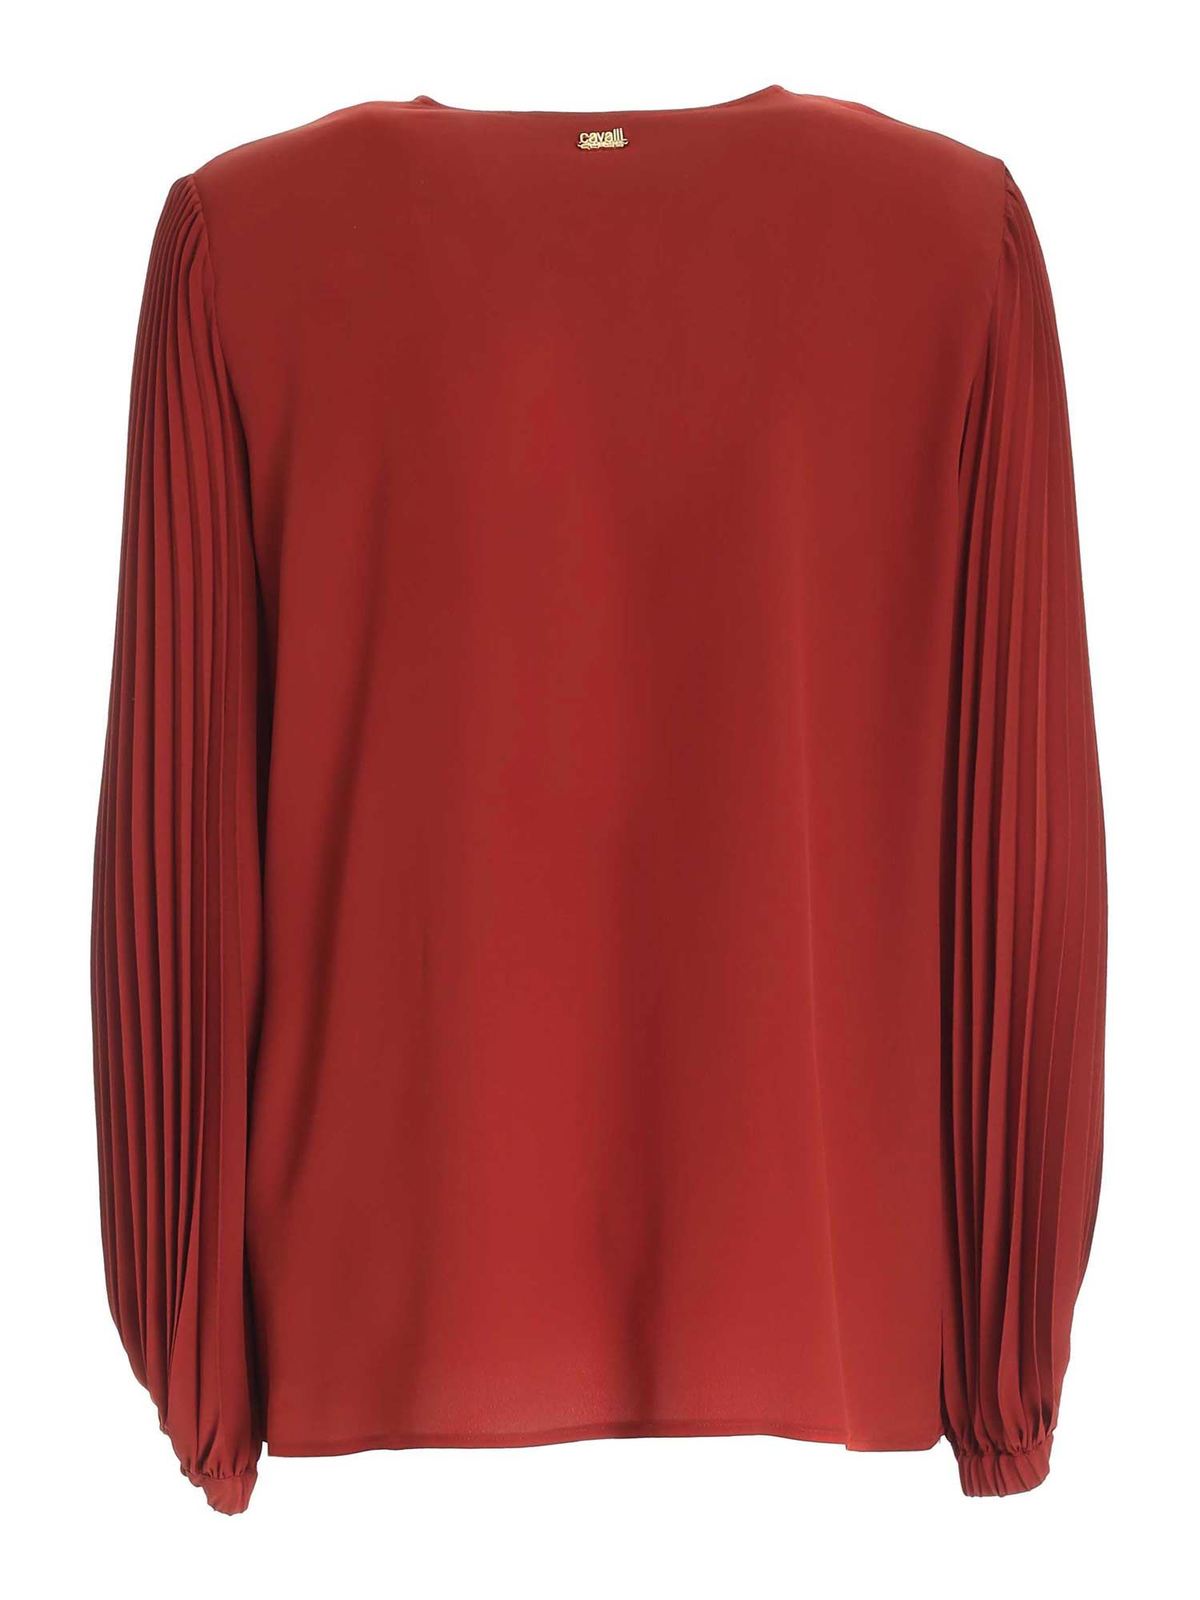 Shirts Class Roberto Cavalli - Crepe shirt in dark red - B0IZA62091532709